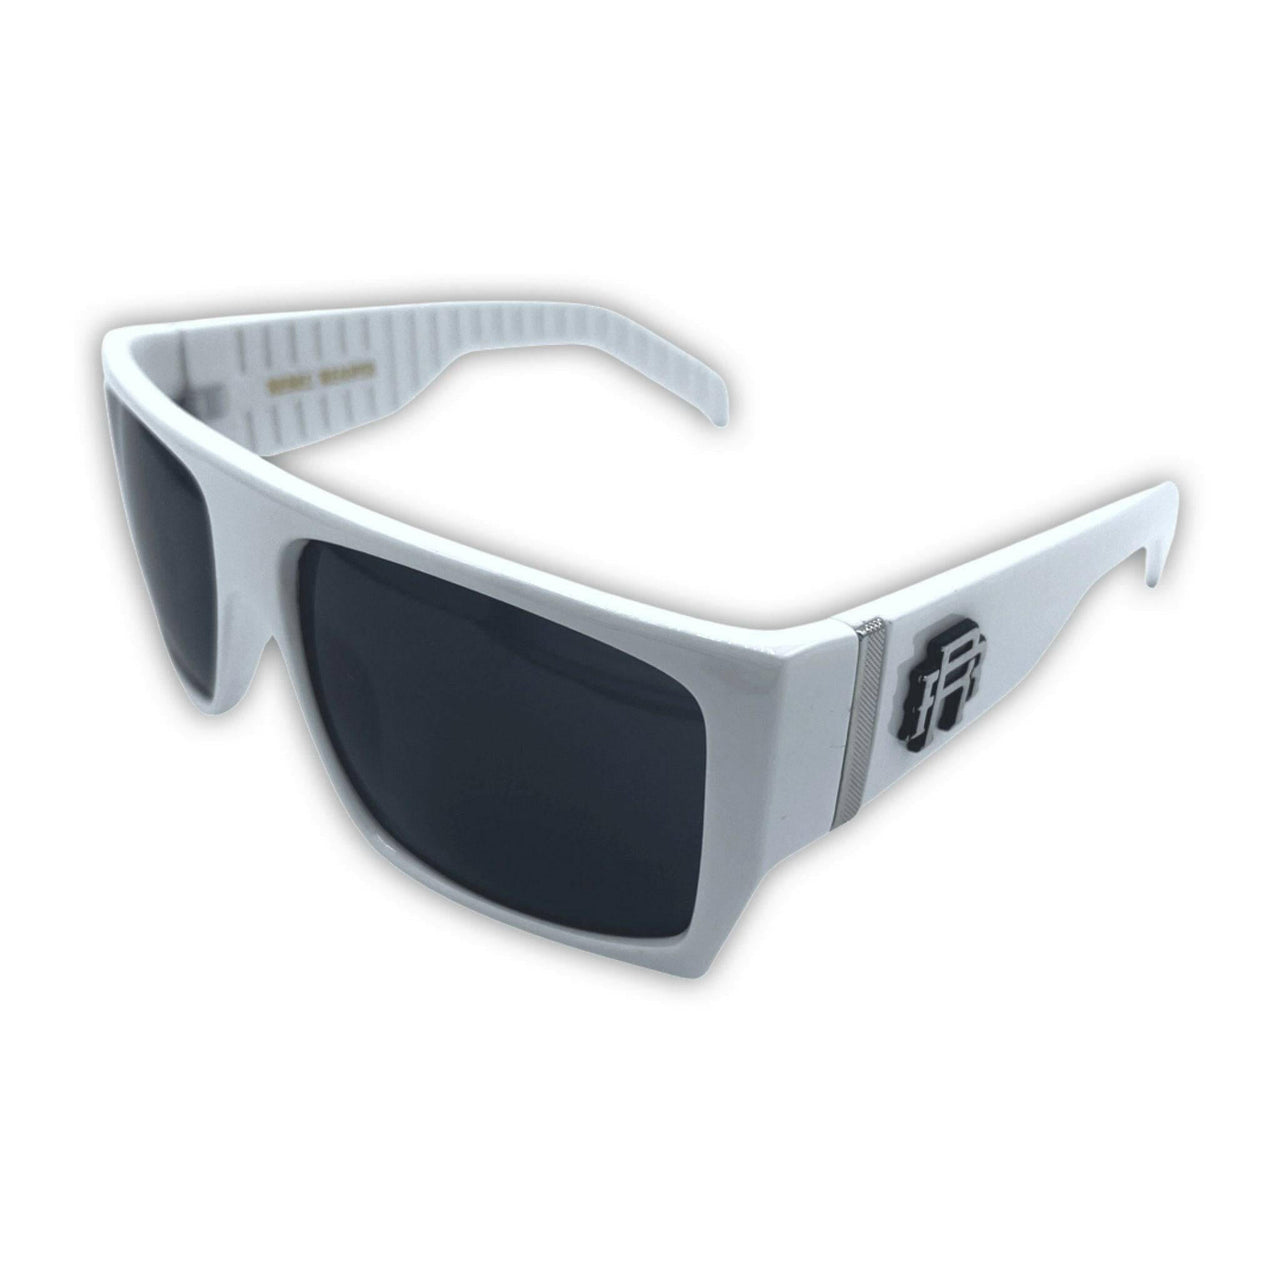 Retro White Sunglasses - Rebel Reaper Clothing Company Sunglasses